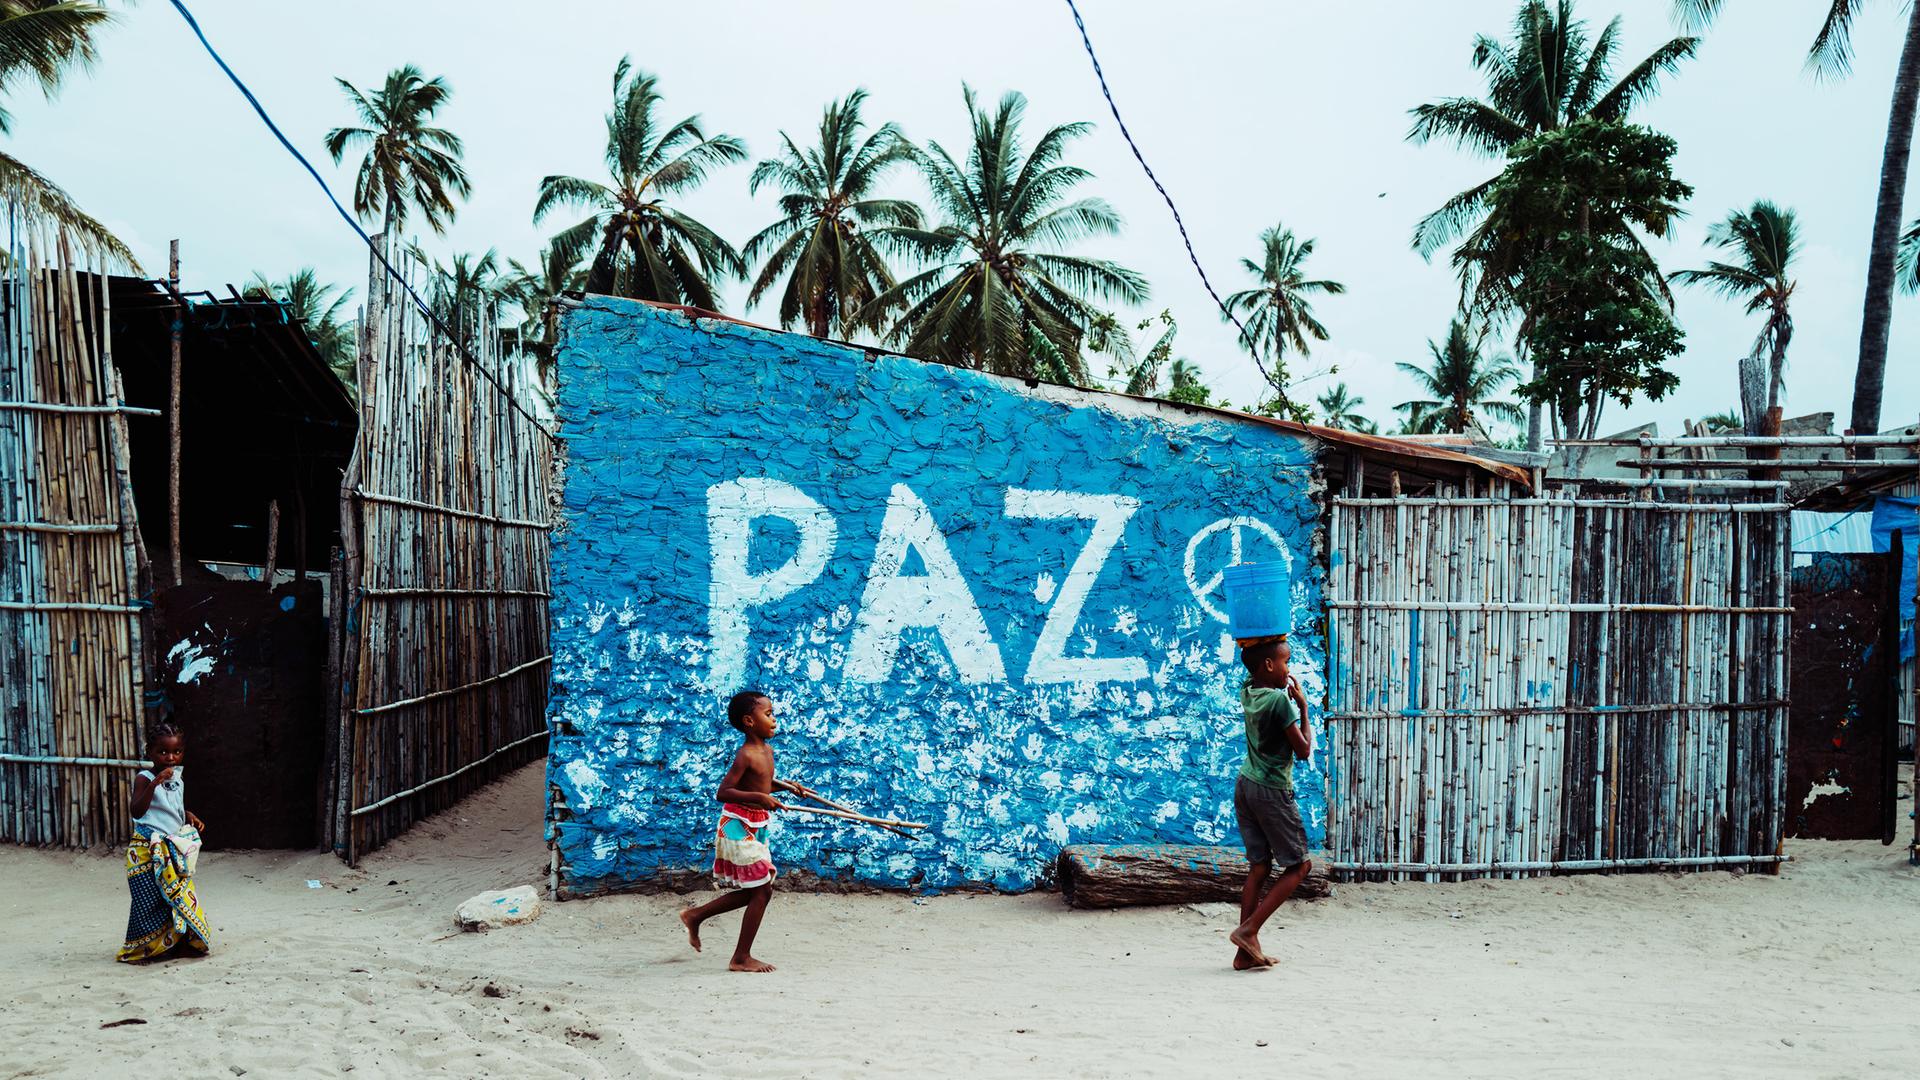 Eine Blaue Wand mit dem Wort "PAZ" (Frieden) in Cabo Delgado, Mosambik. Kinder spielen davor.